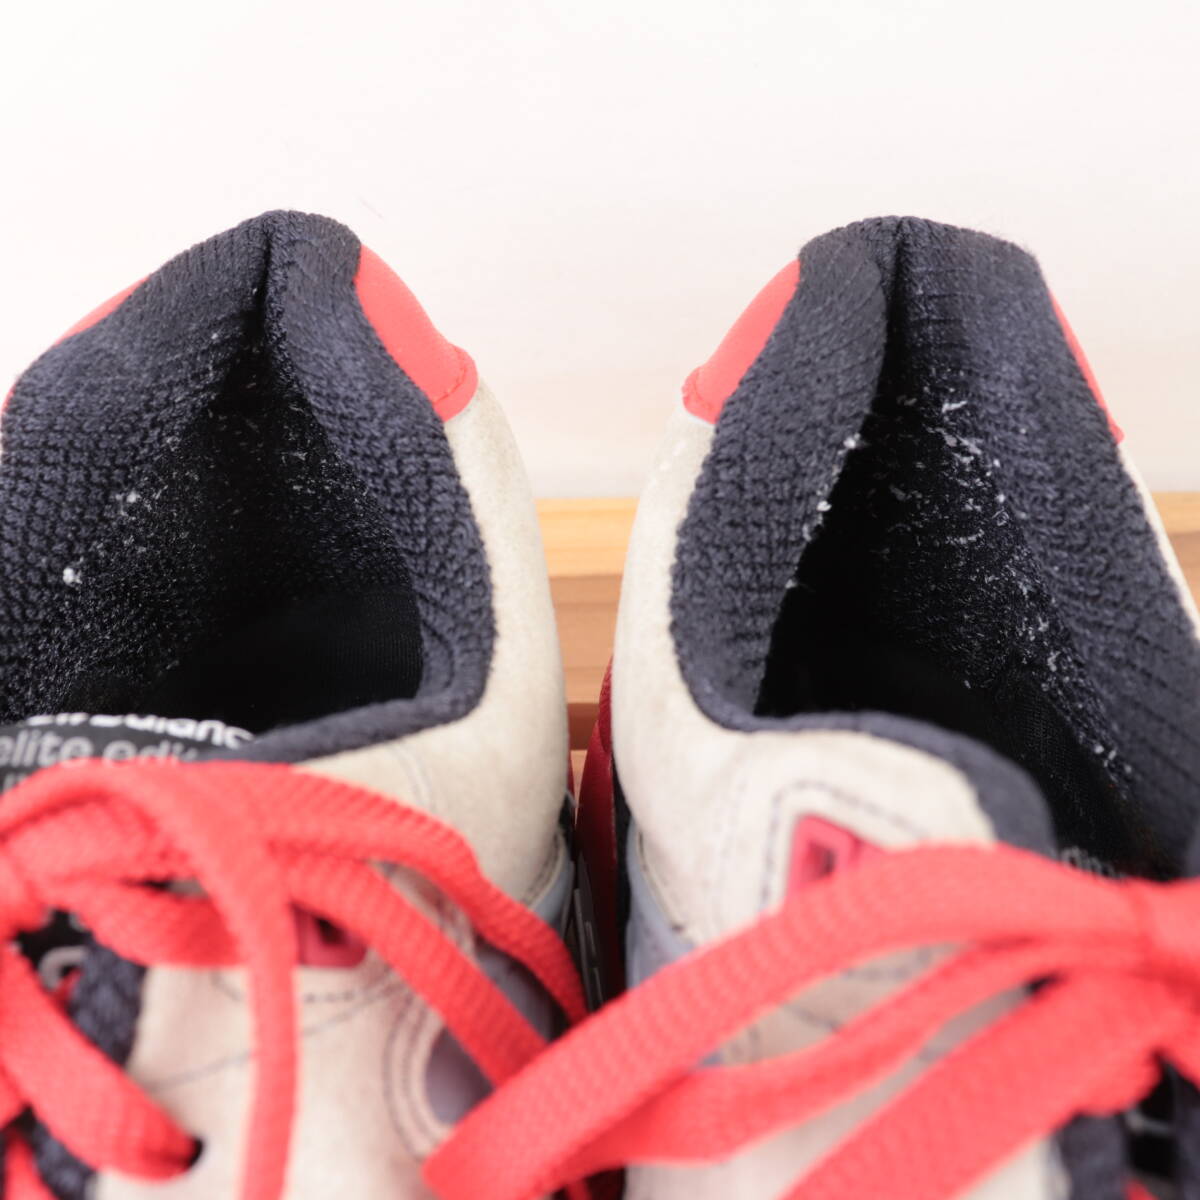 z1065[580] New balance US9 27.0cm/ серый белый красный чёрный newbalance мужской спортивные туфли б/у 